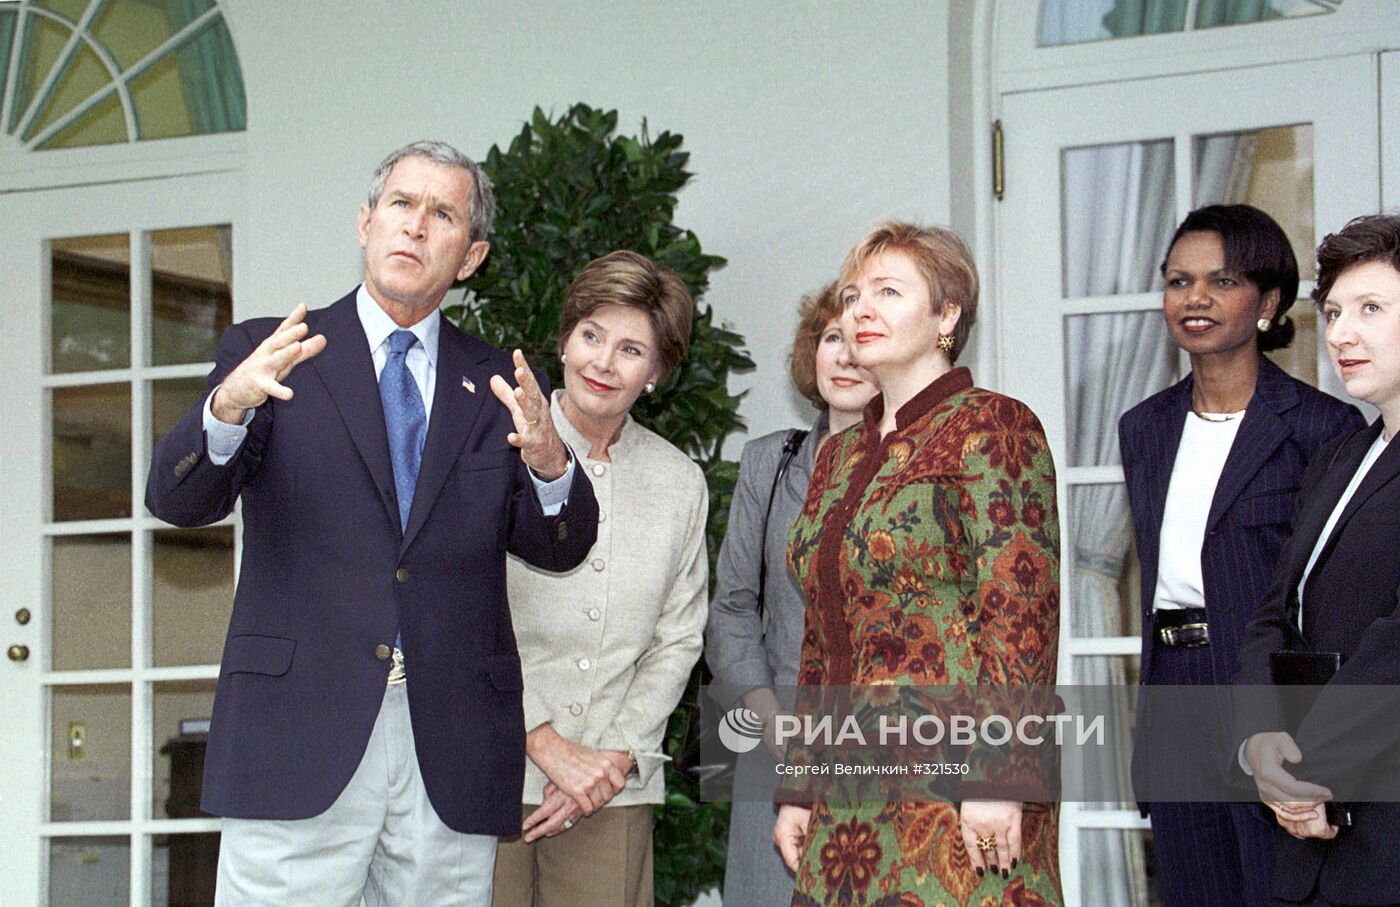 Л.Путина, Л.Буш, Дж.Буш и К.Райс